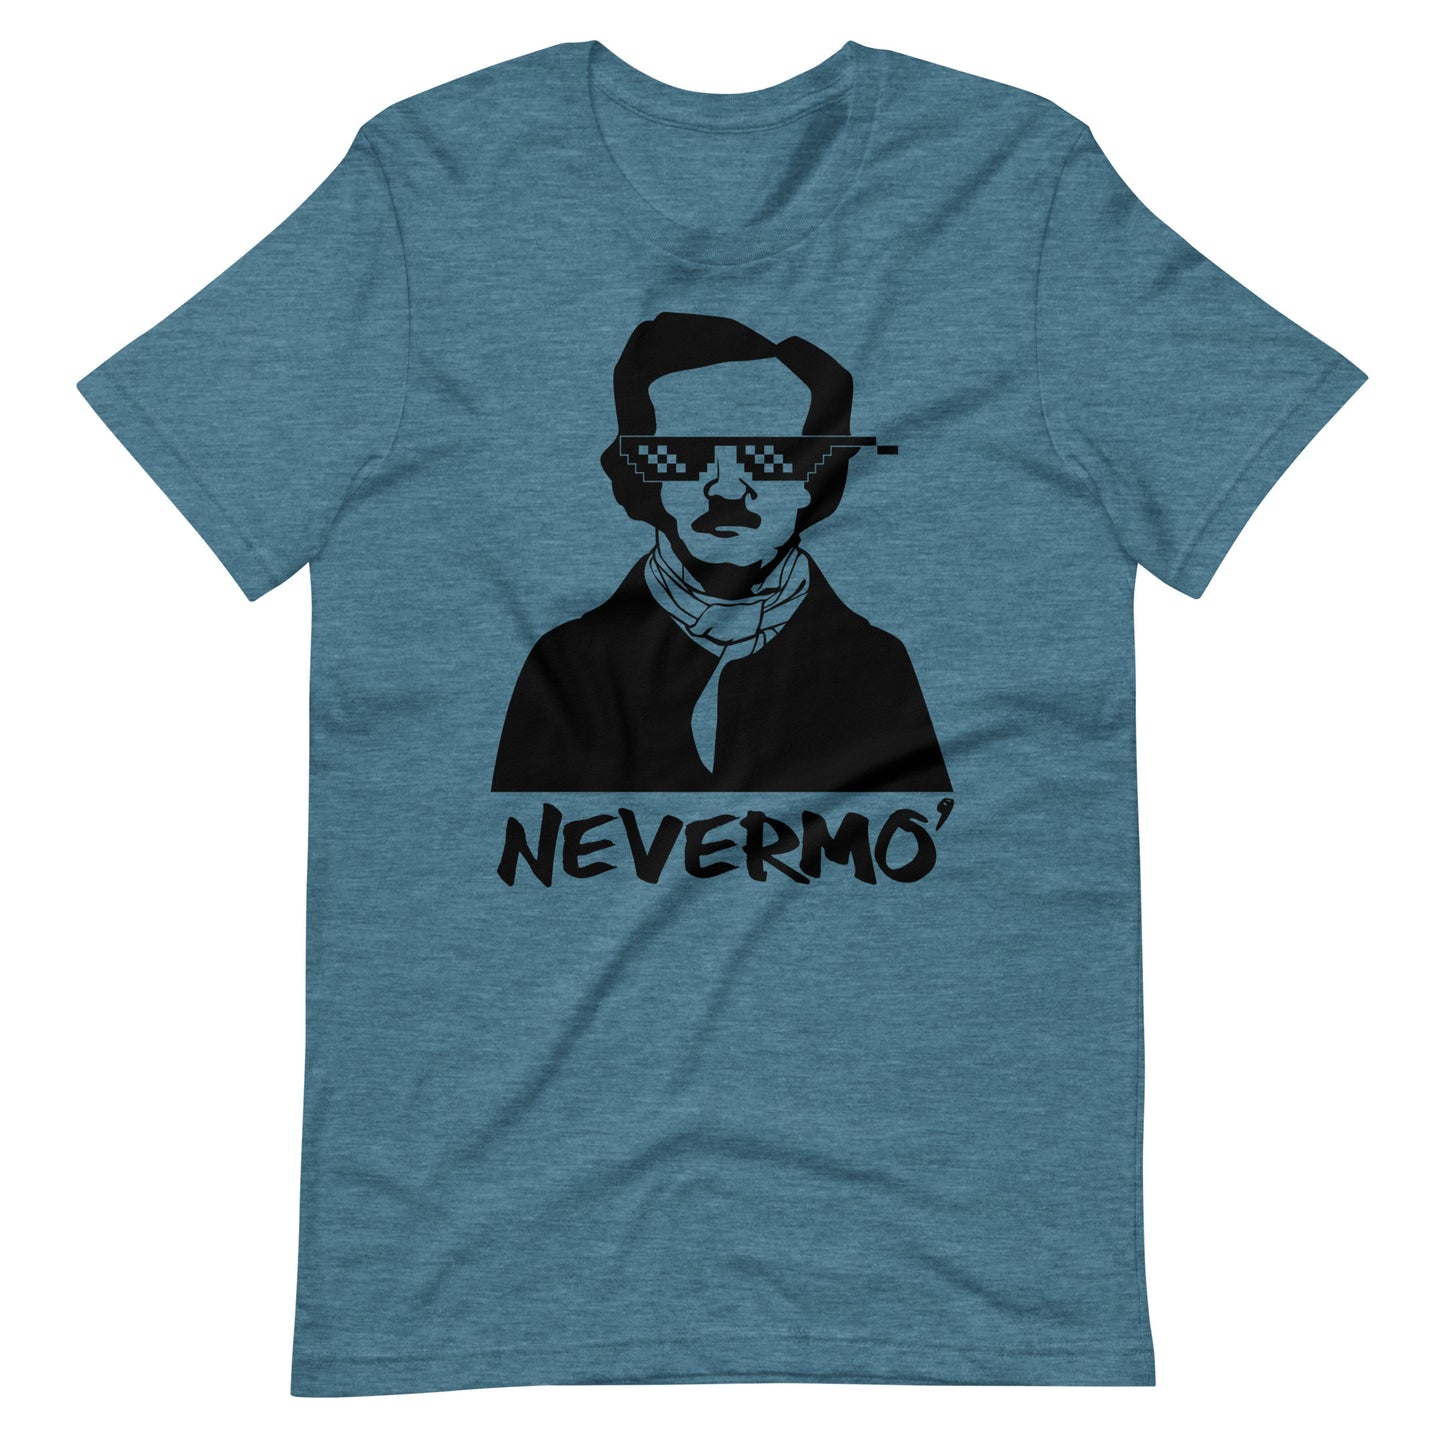 Women's Edgar Allan Poe "Nevermo" t-shirt - Heather Deep Teal Front